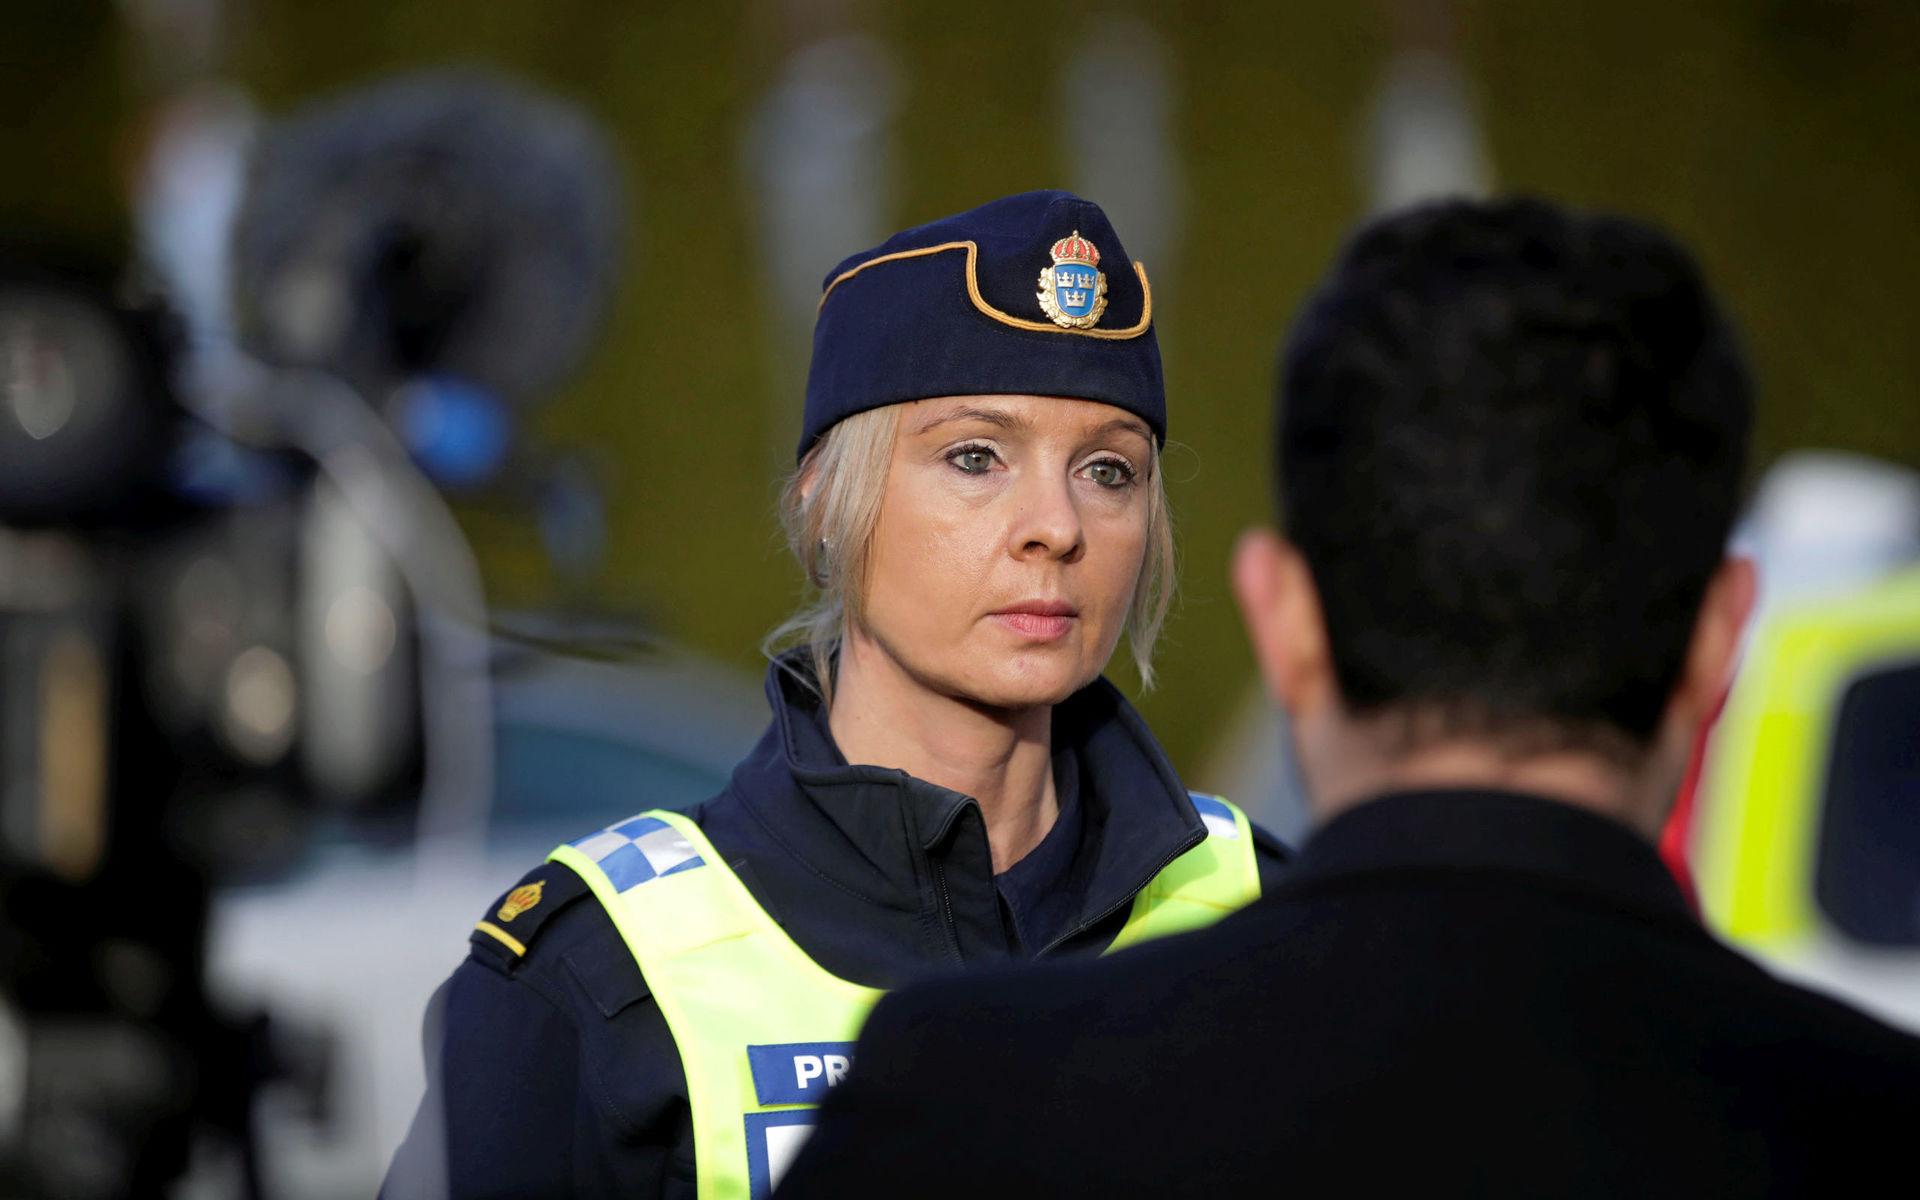 Polisens presstalesperson, Anna Göransson, säger att sökandet fortsätter även under veckan som följer.